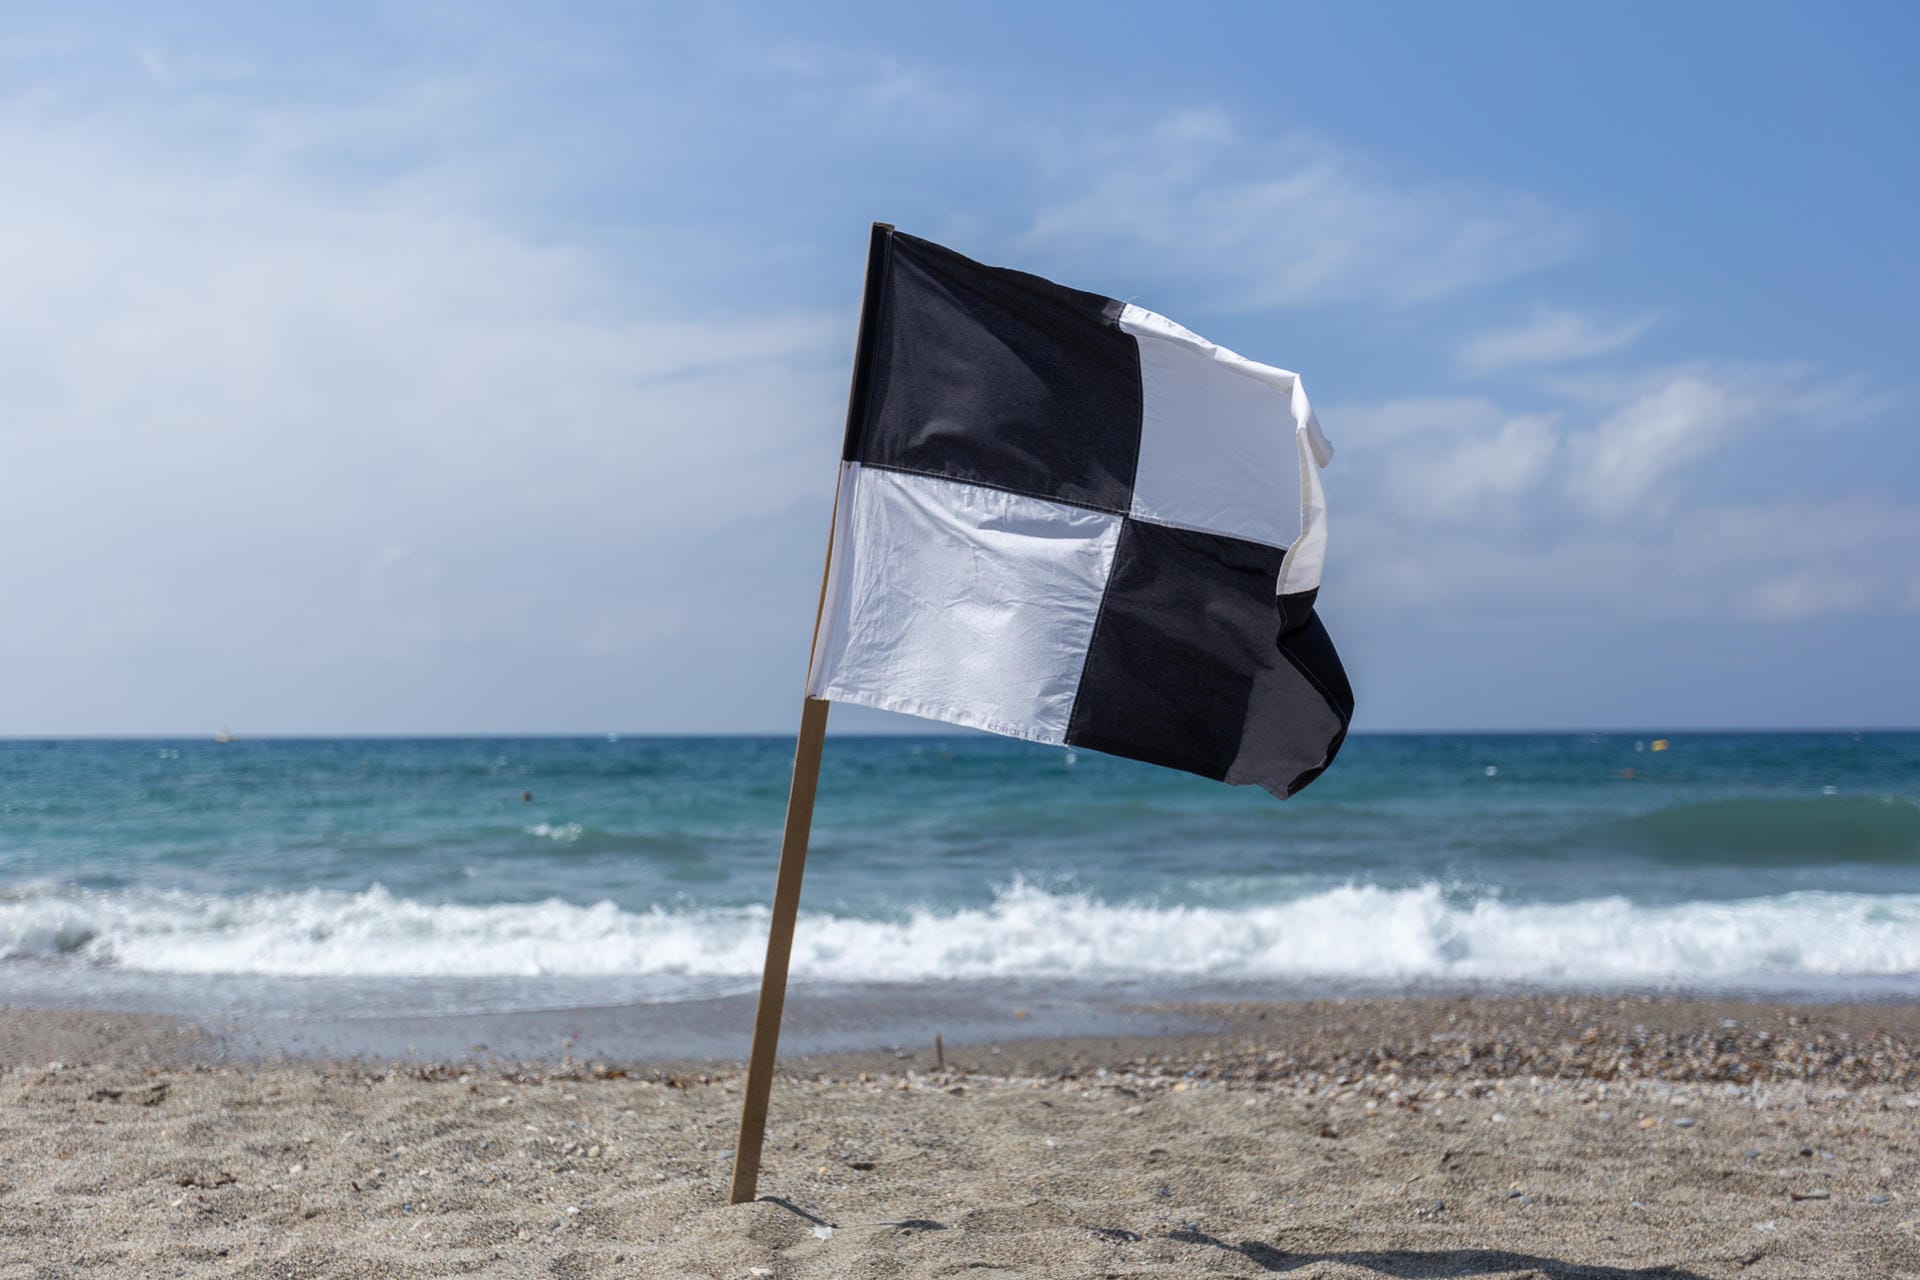 Schwarz-weiße Flagge: Hier ist Schwimmen verboten, denn es handelt sich um eine ausgewiesene Wassersportzone. Der Abschnitt, der von den schwarz-weißen Flaggen eingegrenzt wird, ist reserviert für Strandbesucher mit Surfboard, Segelboot und Co.